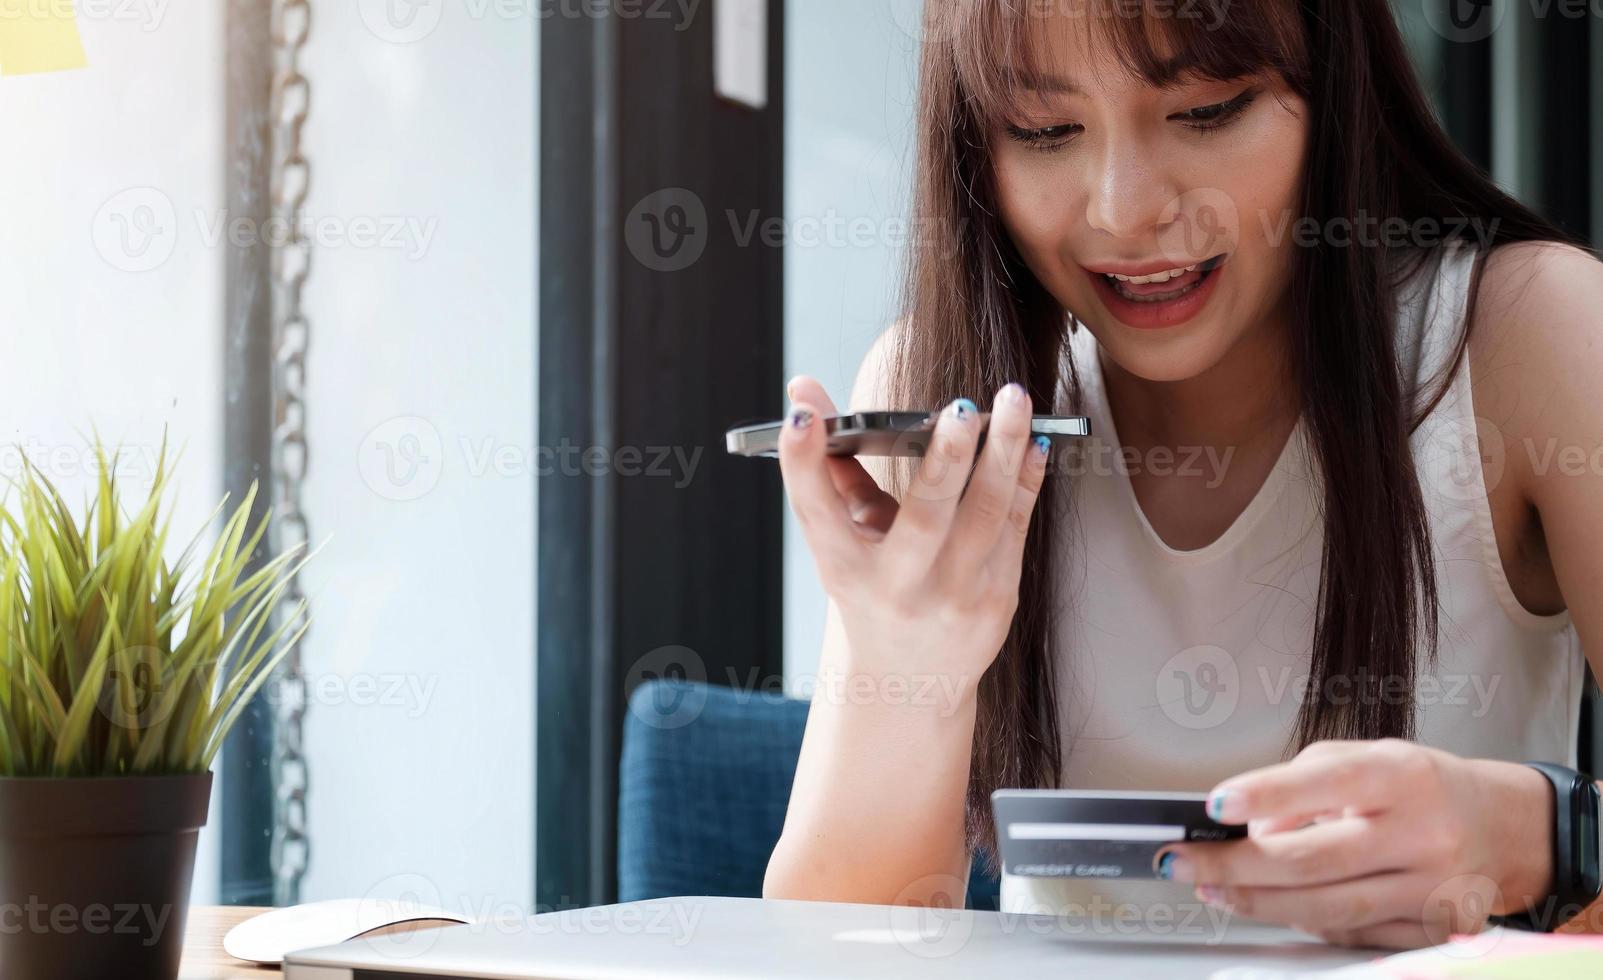 kvinna med smartphone och kreditkort foto